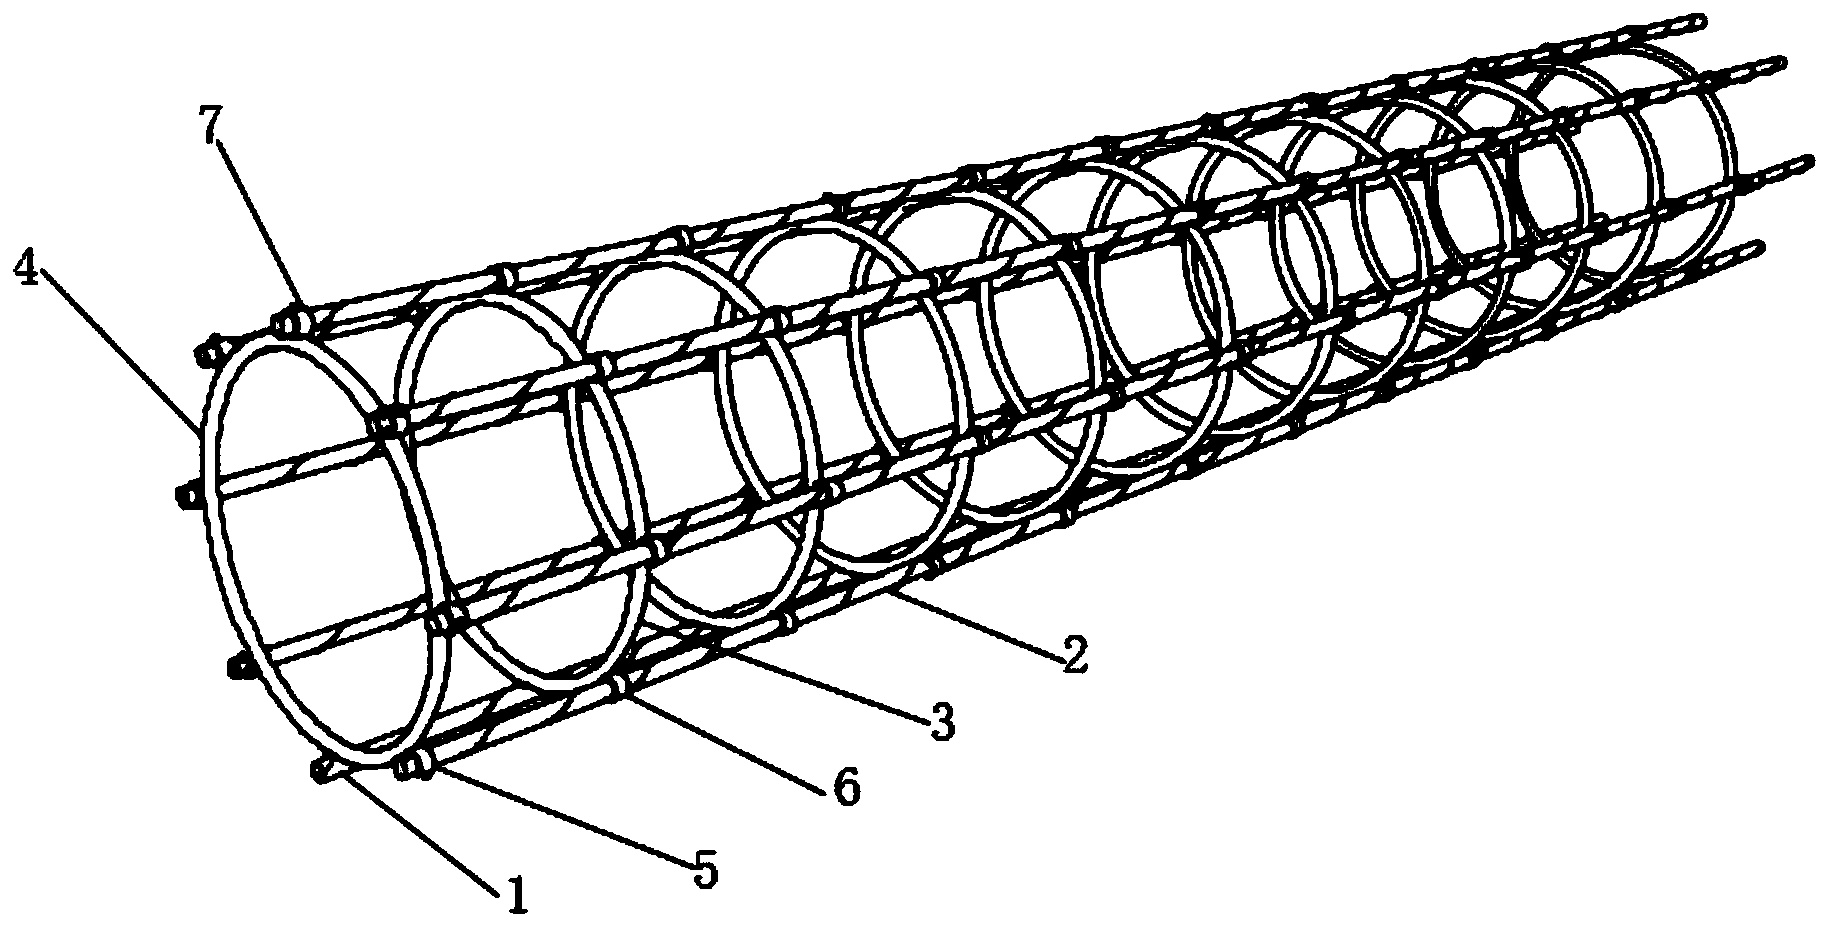 所述定位筋杆的上方间隔设置有环形主箍筋,所述环形定位箍筋的外侧